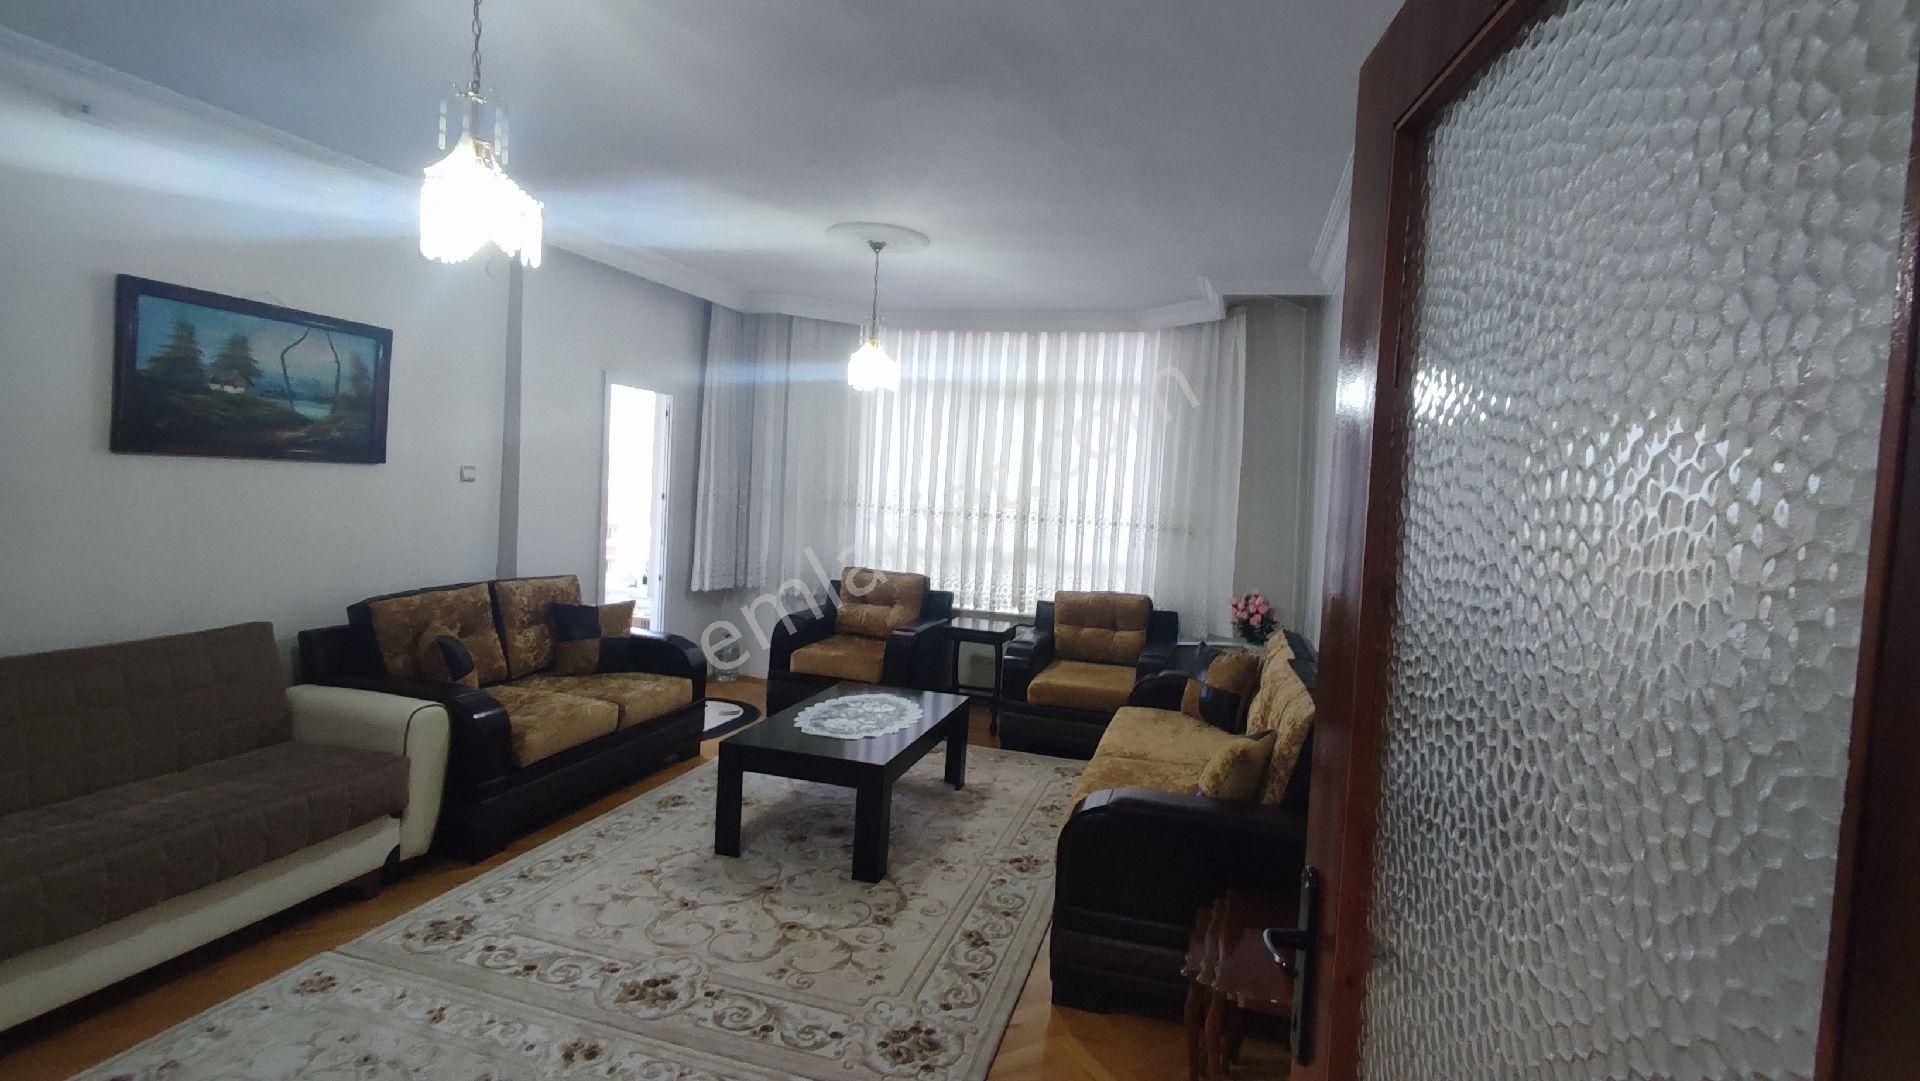 Etimesgut Ayyıldız Satılık Daire Ankara Ayyıldız Mahallesinde 3+1 satılık ev